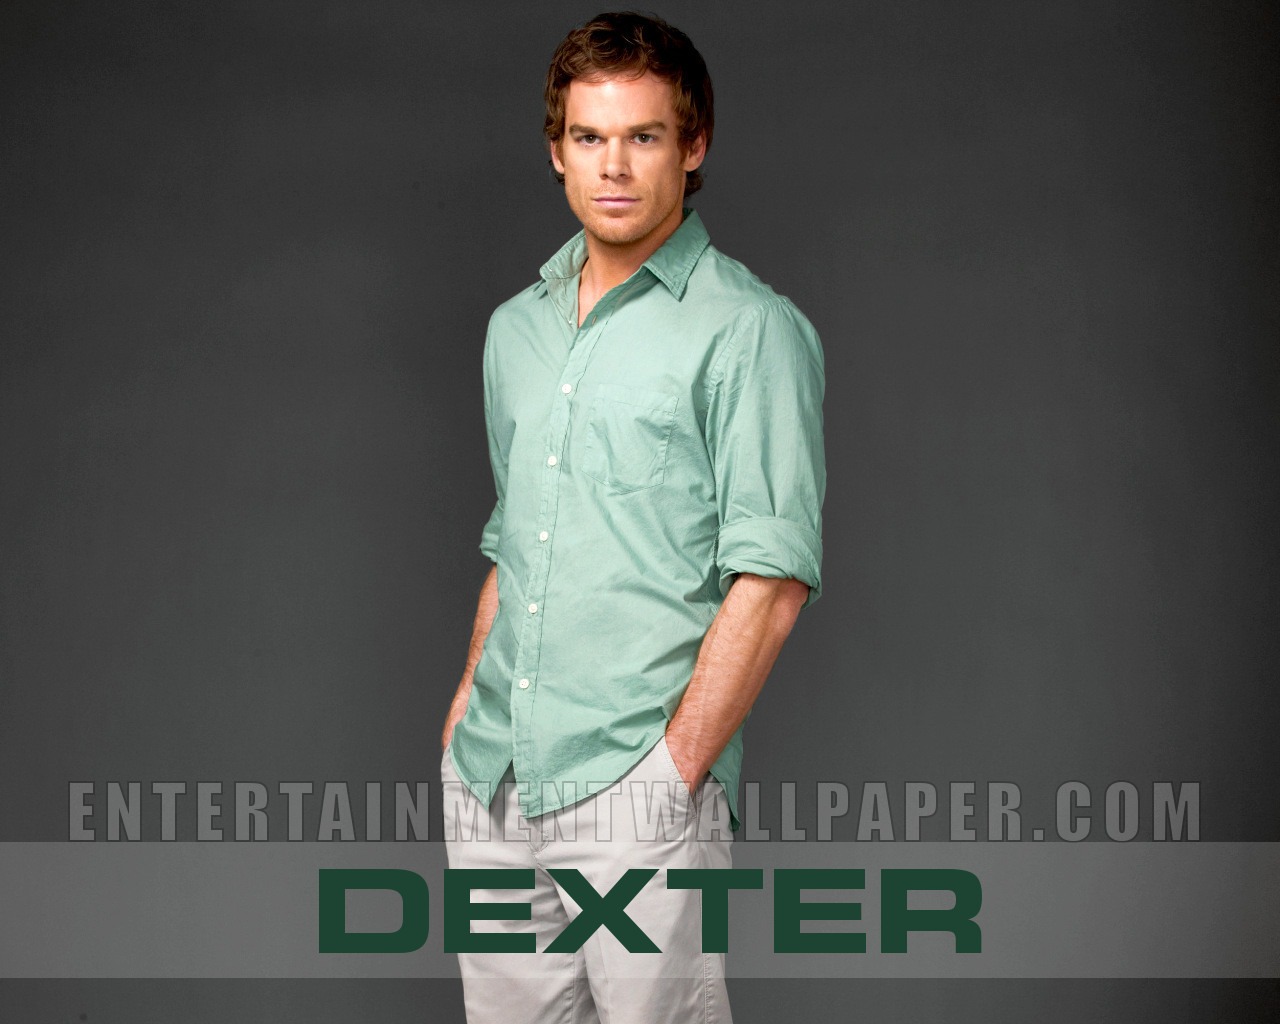 Dexter wallpaper #21 - 1280x1024